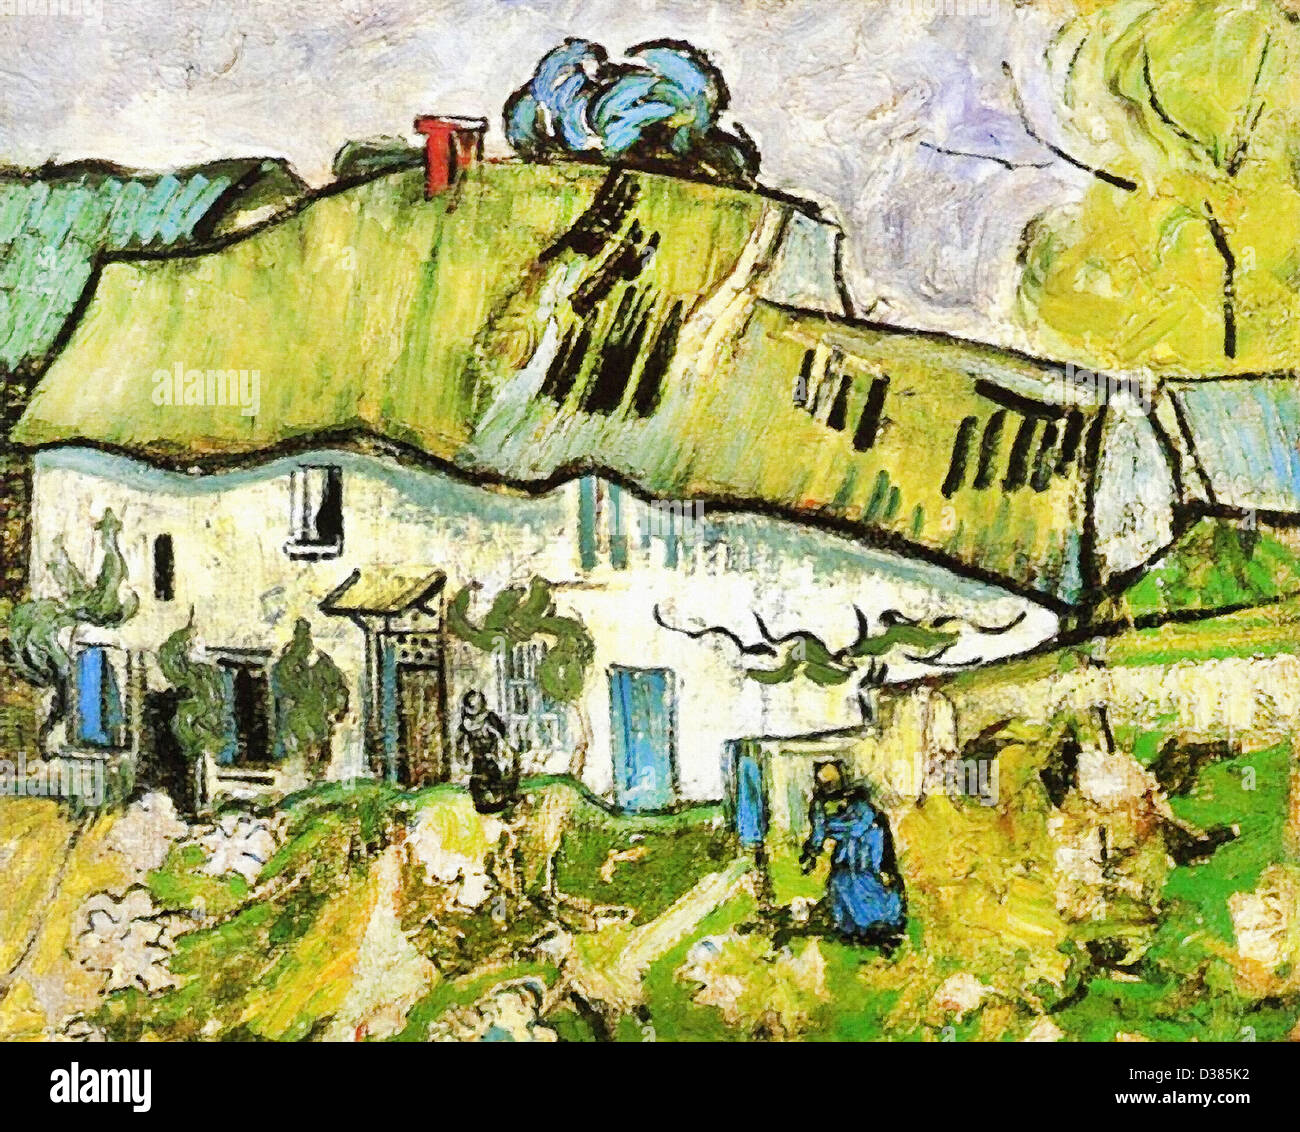 Vincent van Gogh, ferme avec deux chiffres. 1890. Le postimpressionnisme. Huile sur toile. Van Gogh Museum, Amsterdam, Pays-Bas. Banque D'Images